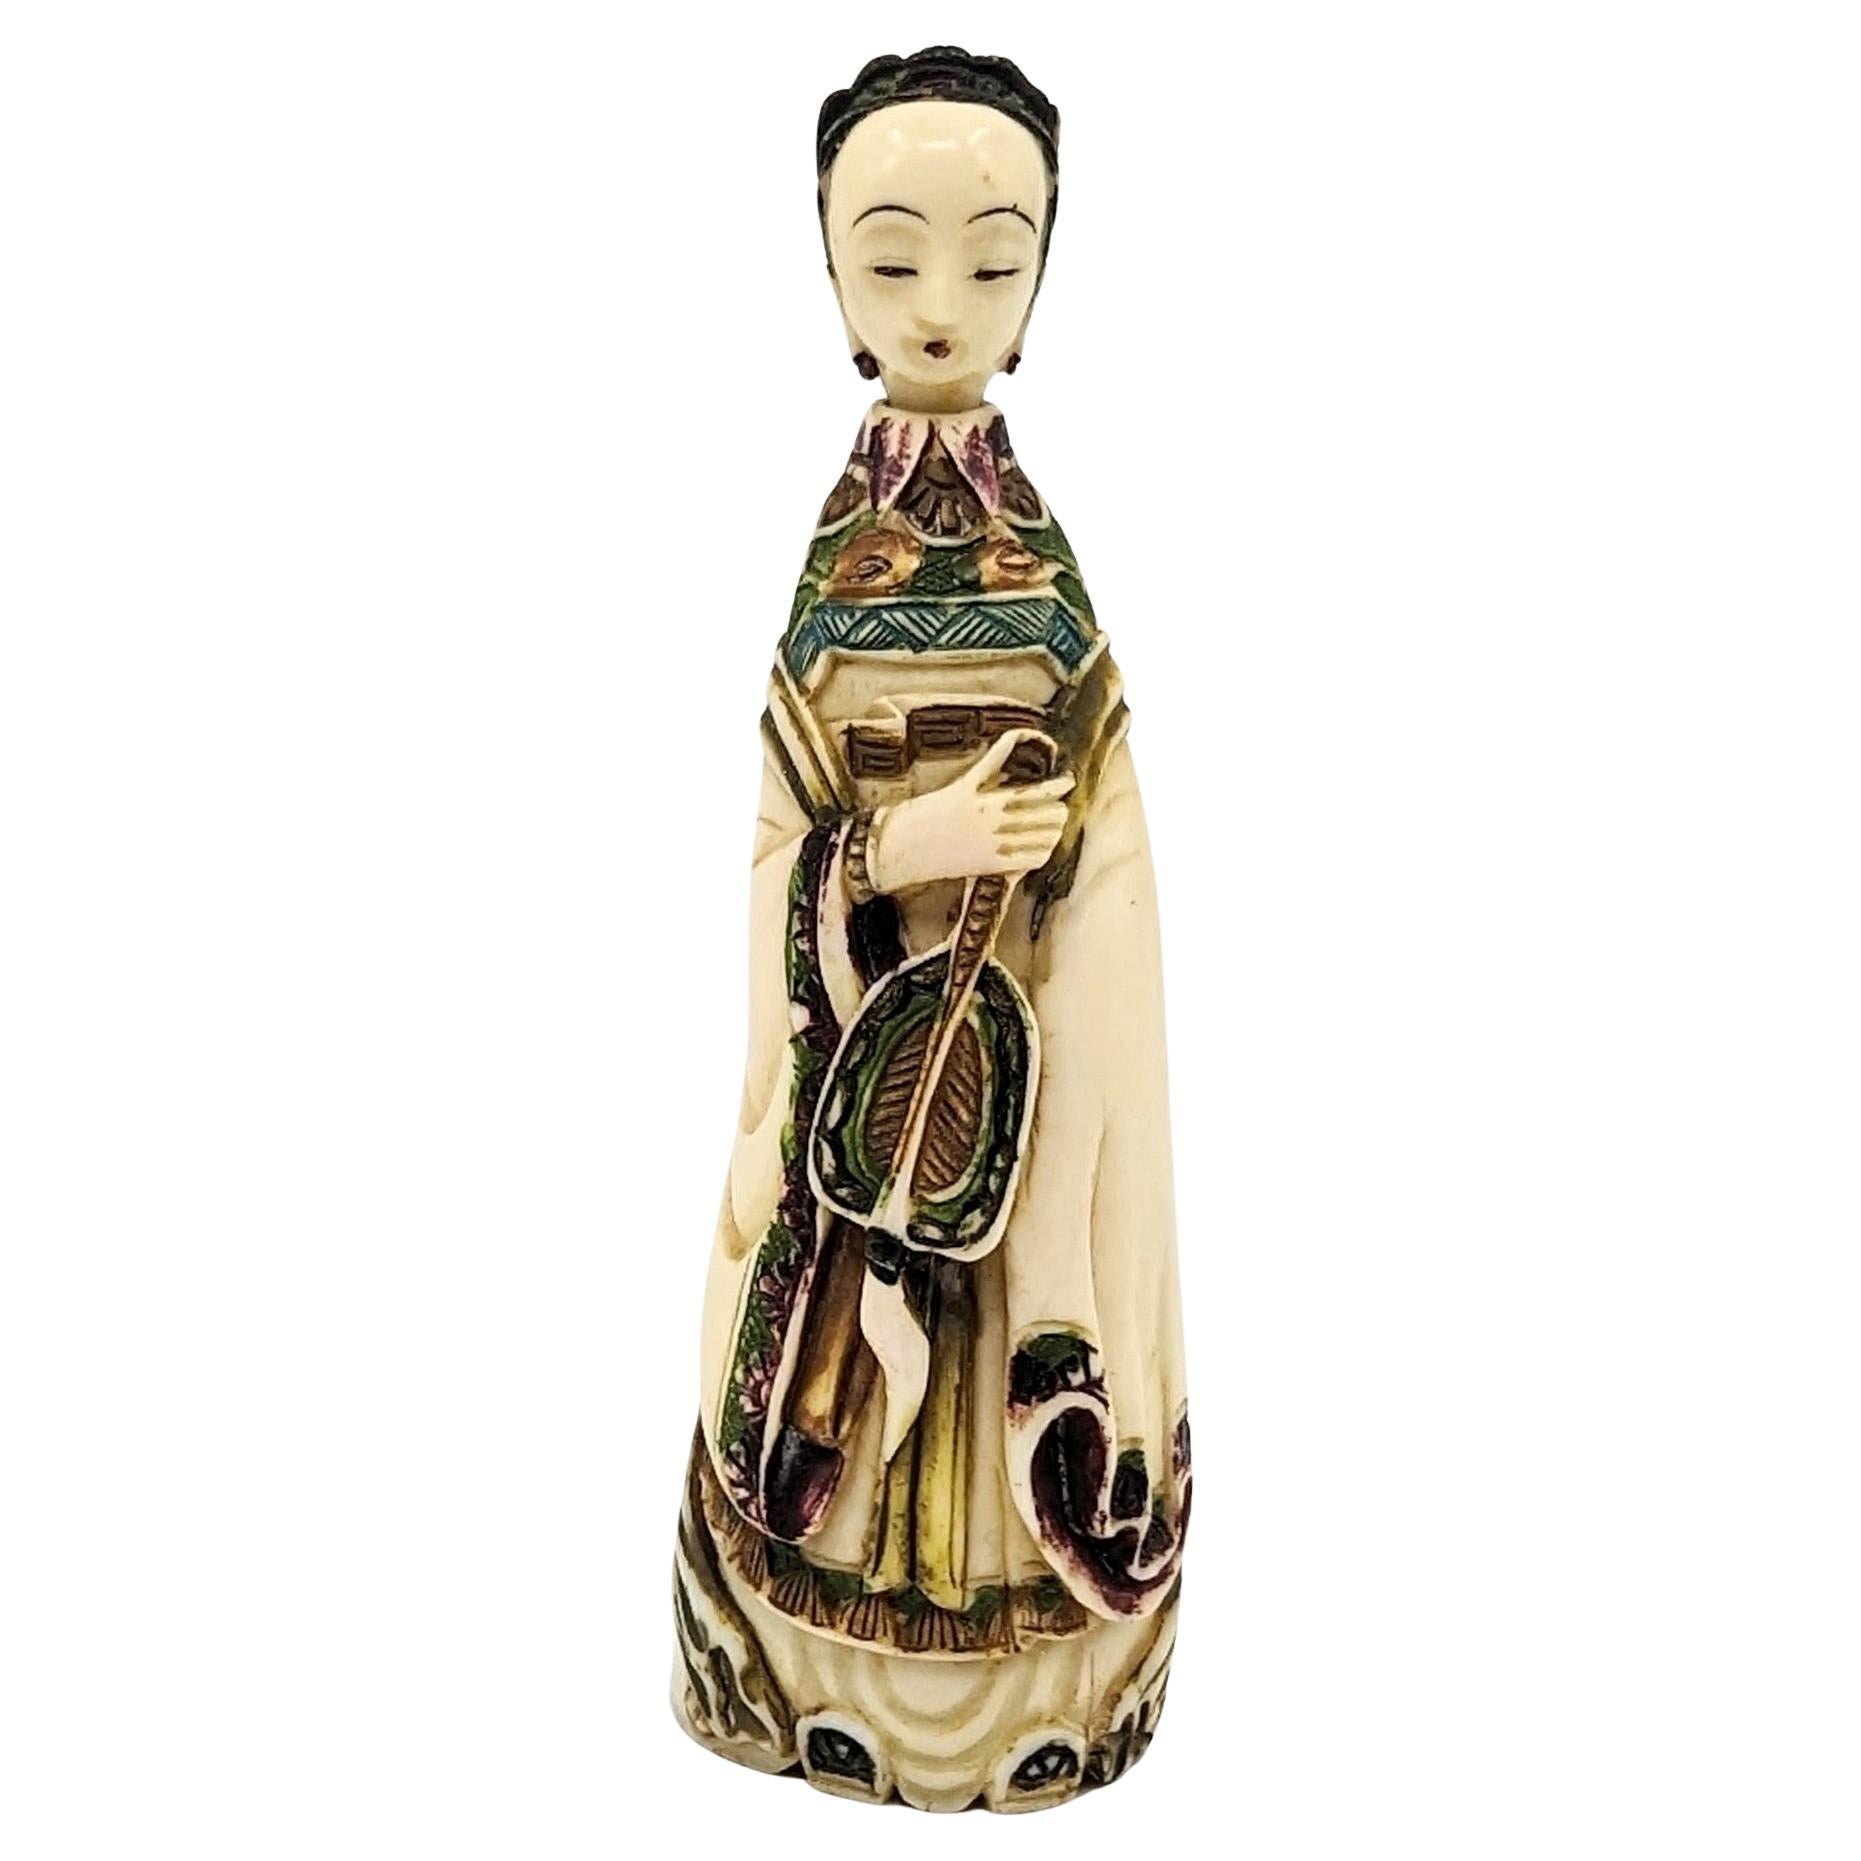 Flacon à priser chinois ancien et sculpté avec goût en matière naturelle, en forme de dame de cour bien habillée tenant un éventail. La dame affiche un sourire paisible et méditatif, avec des yeux mi-clos et des lèvres minces lustrées de couleur